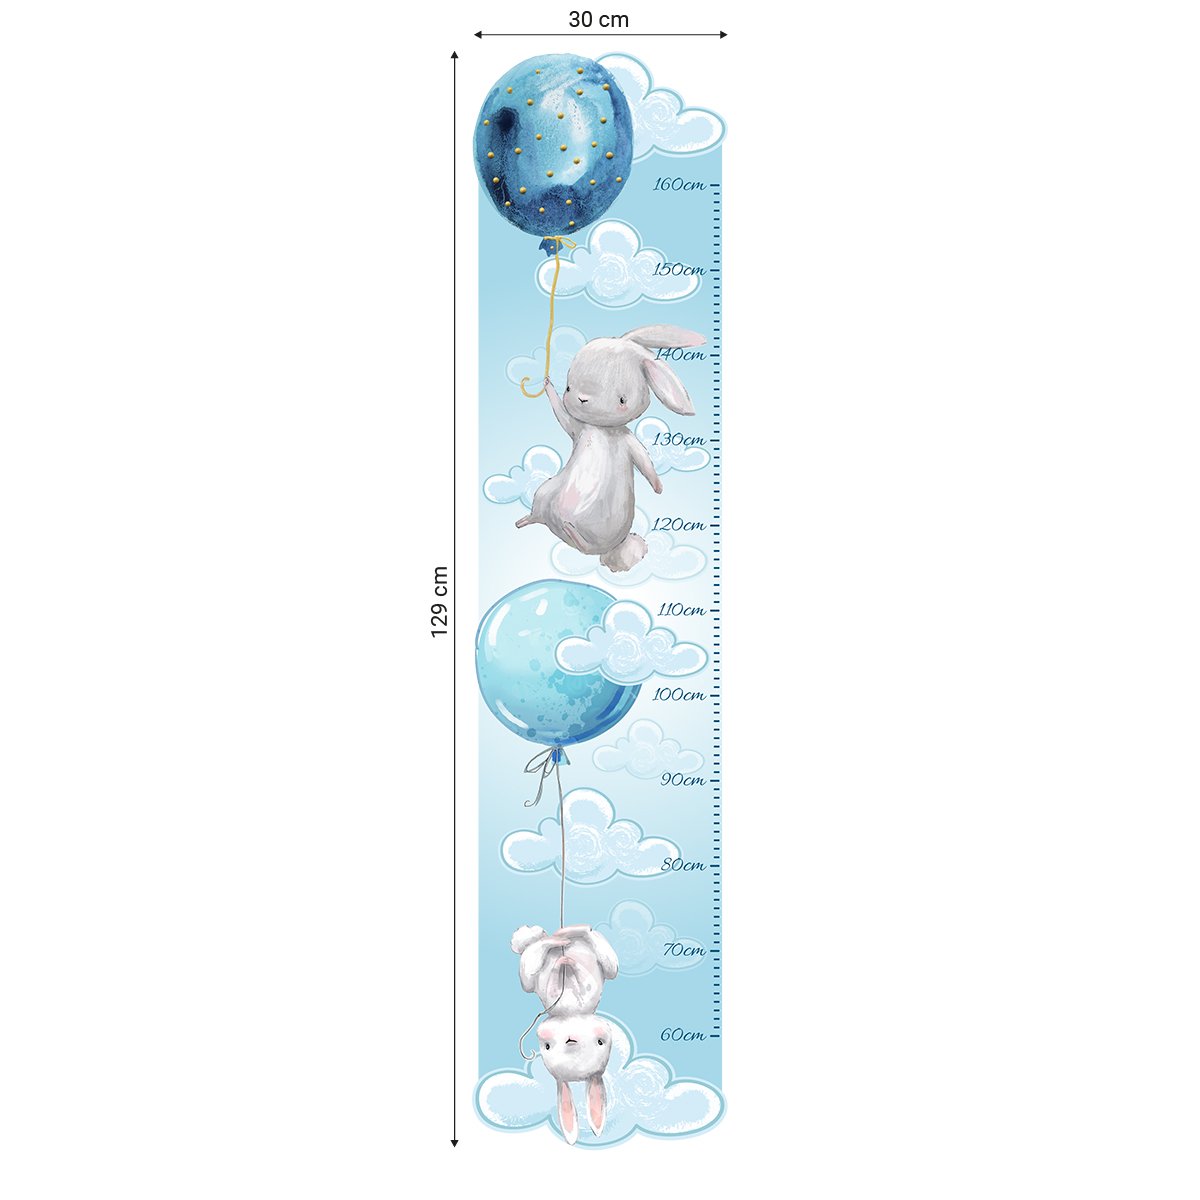 Naklejka dla dzieci miarka wzrostu - chmurki i niebieskie baloniki#kolor_niebieski